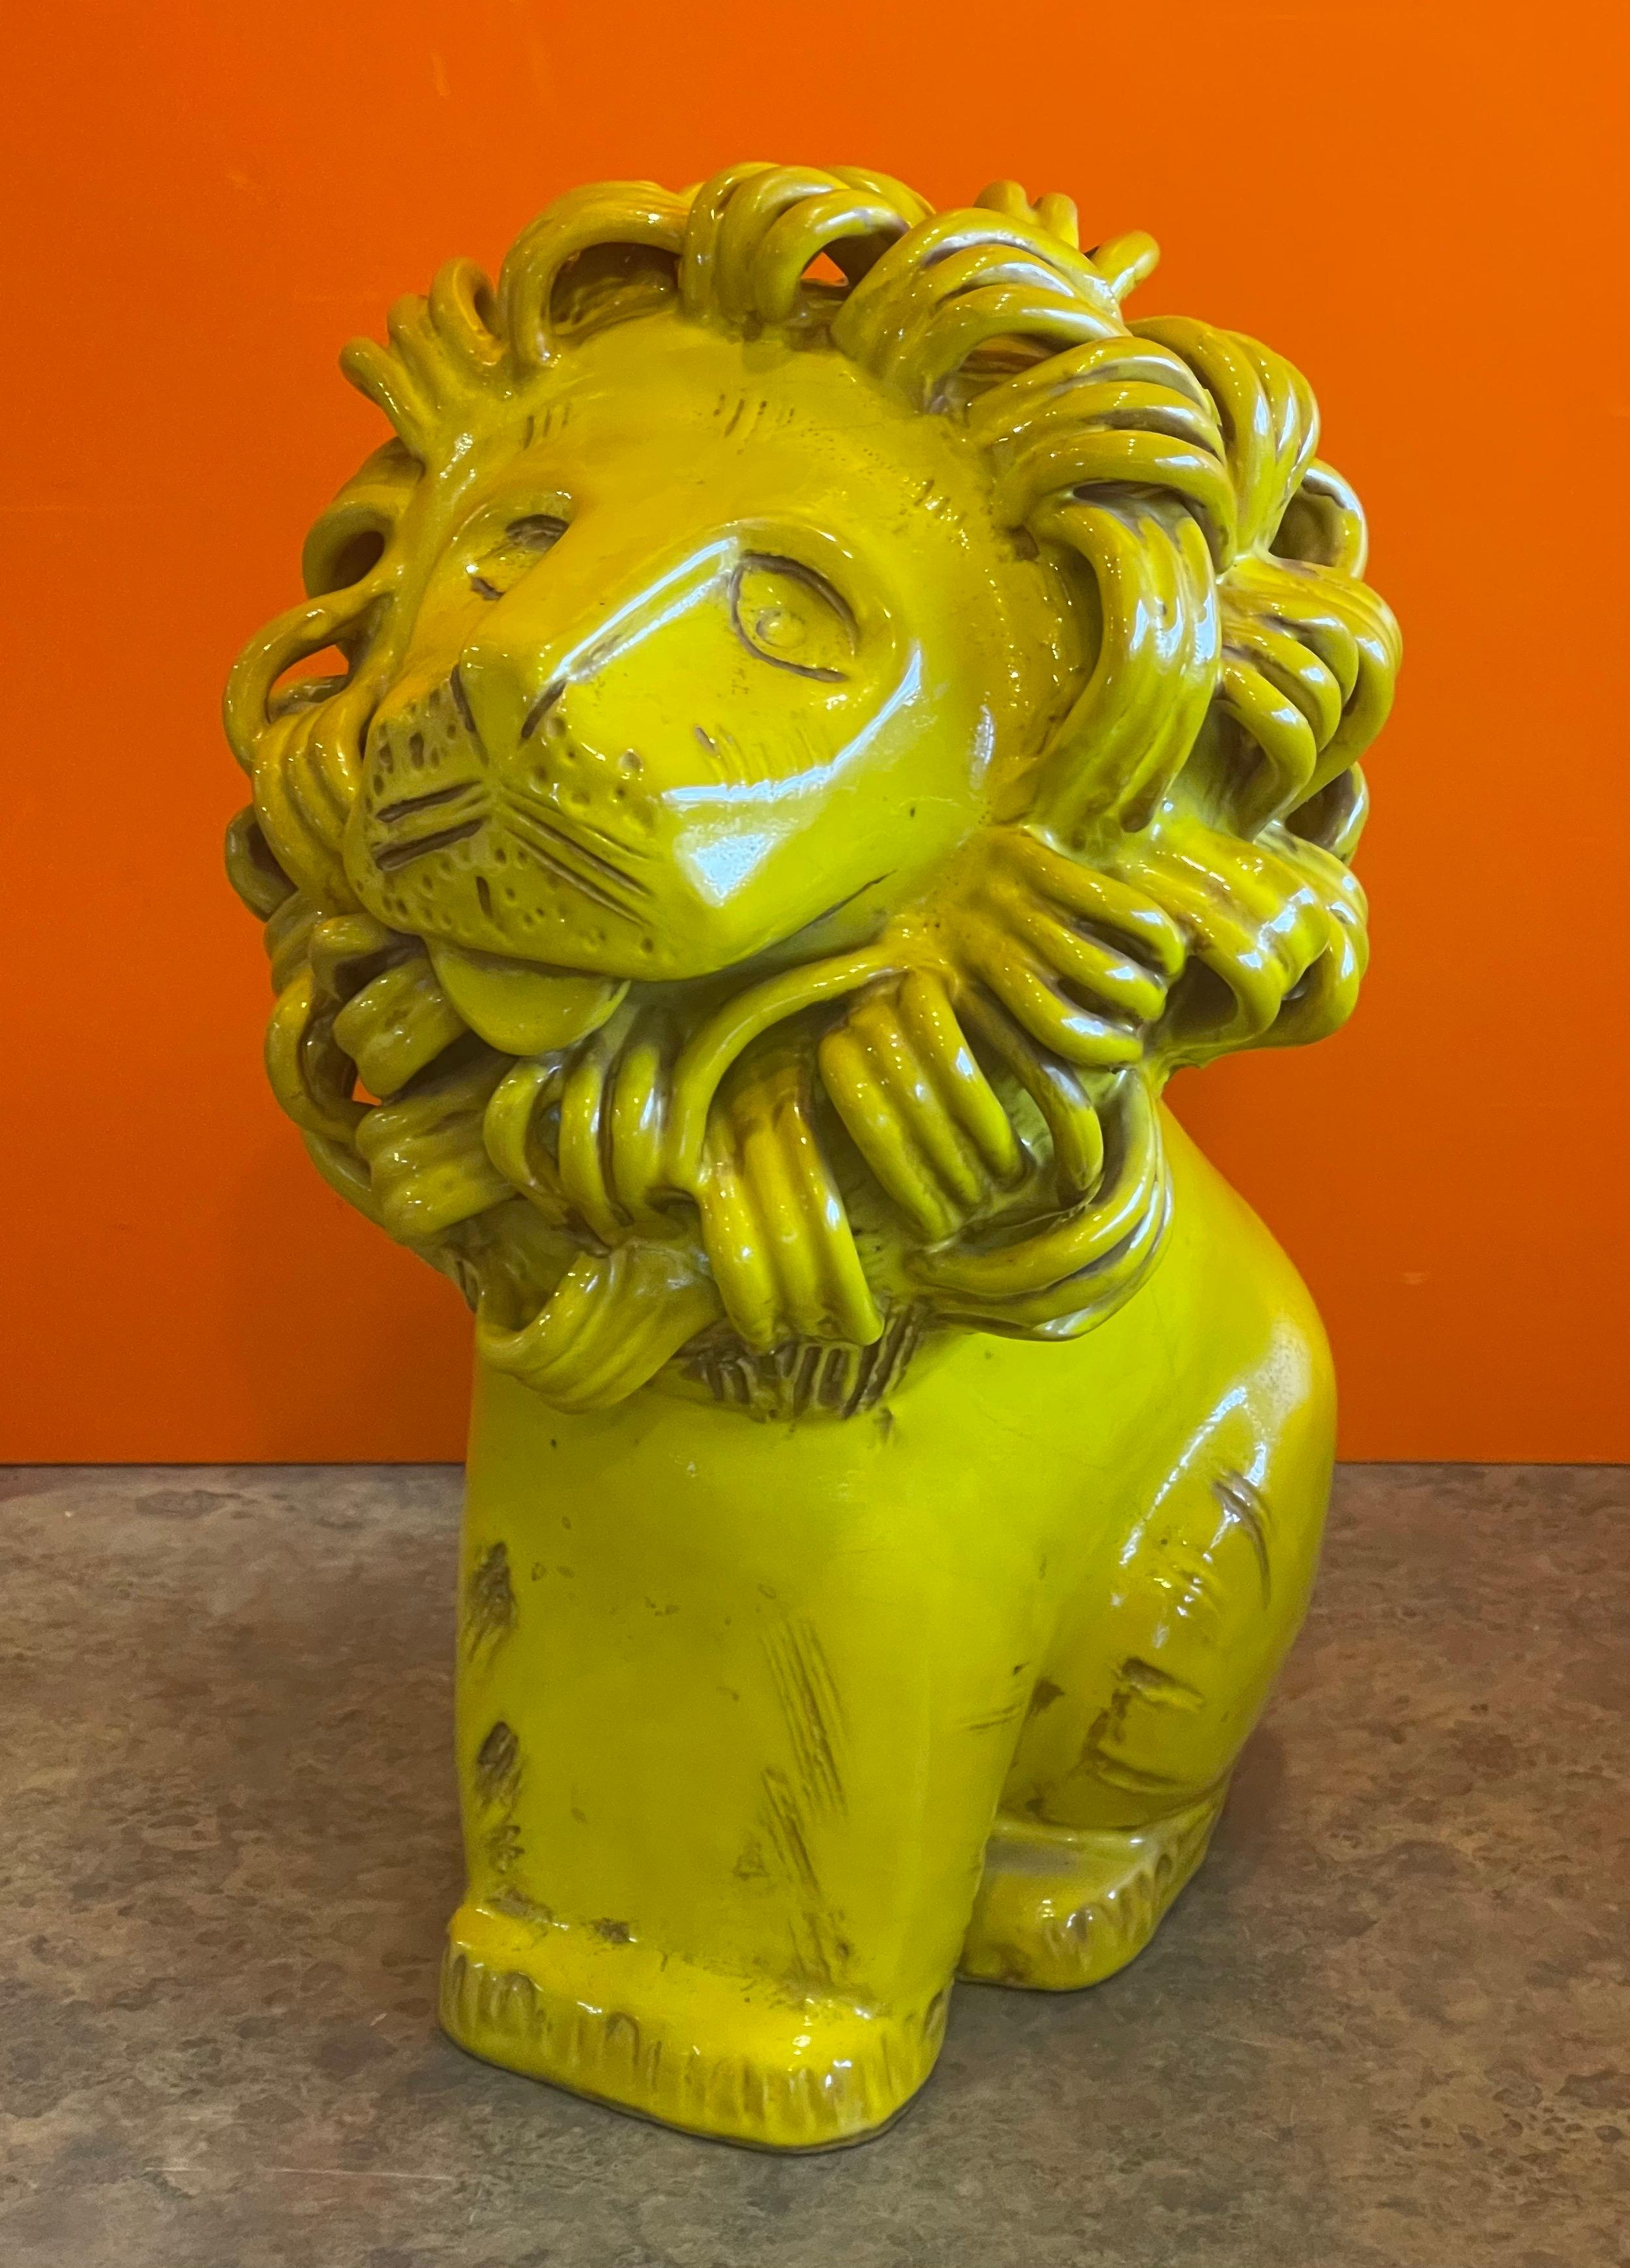 Vintage ceramiche / poterie sculpture lion par Aldo Londi pour Bitossi Raymor, circa 1960s. La pièce est en très bon état vintage, avec de superbes couleurs, textures et détails complexes ; elle serait un ajout fantastique et une pièce centrale à